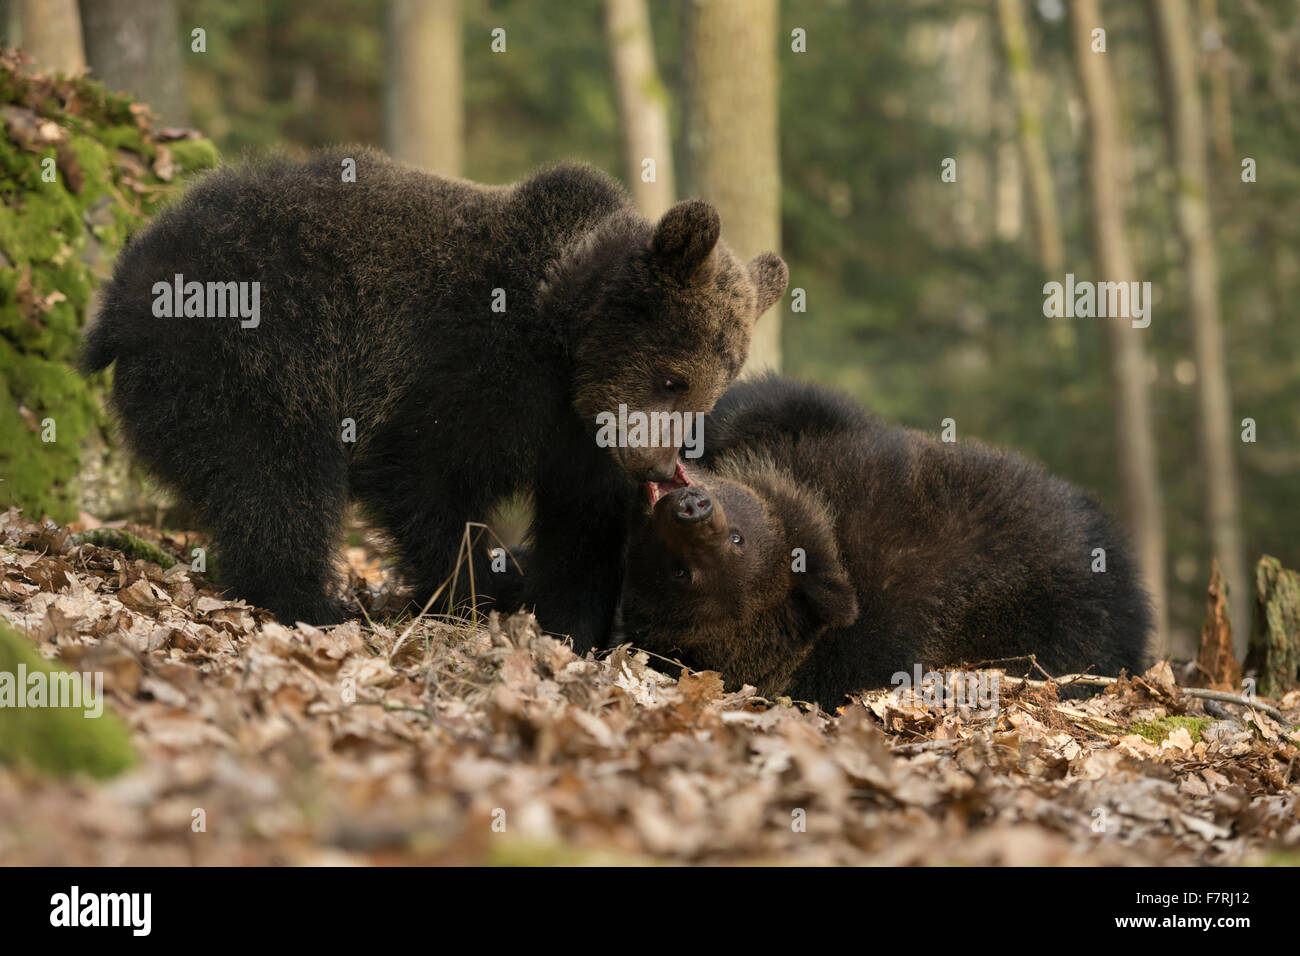 European Brown Bears / Braunbaeren ( Ursus arctos ) in natural forest trials their strength, playing / larking around Stock Photo